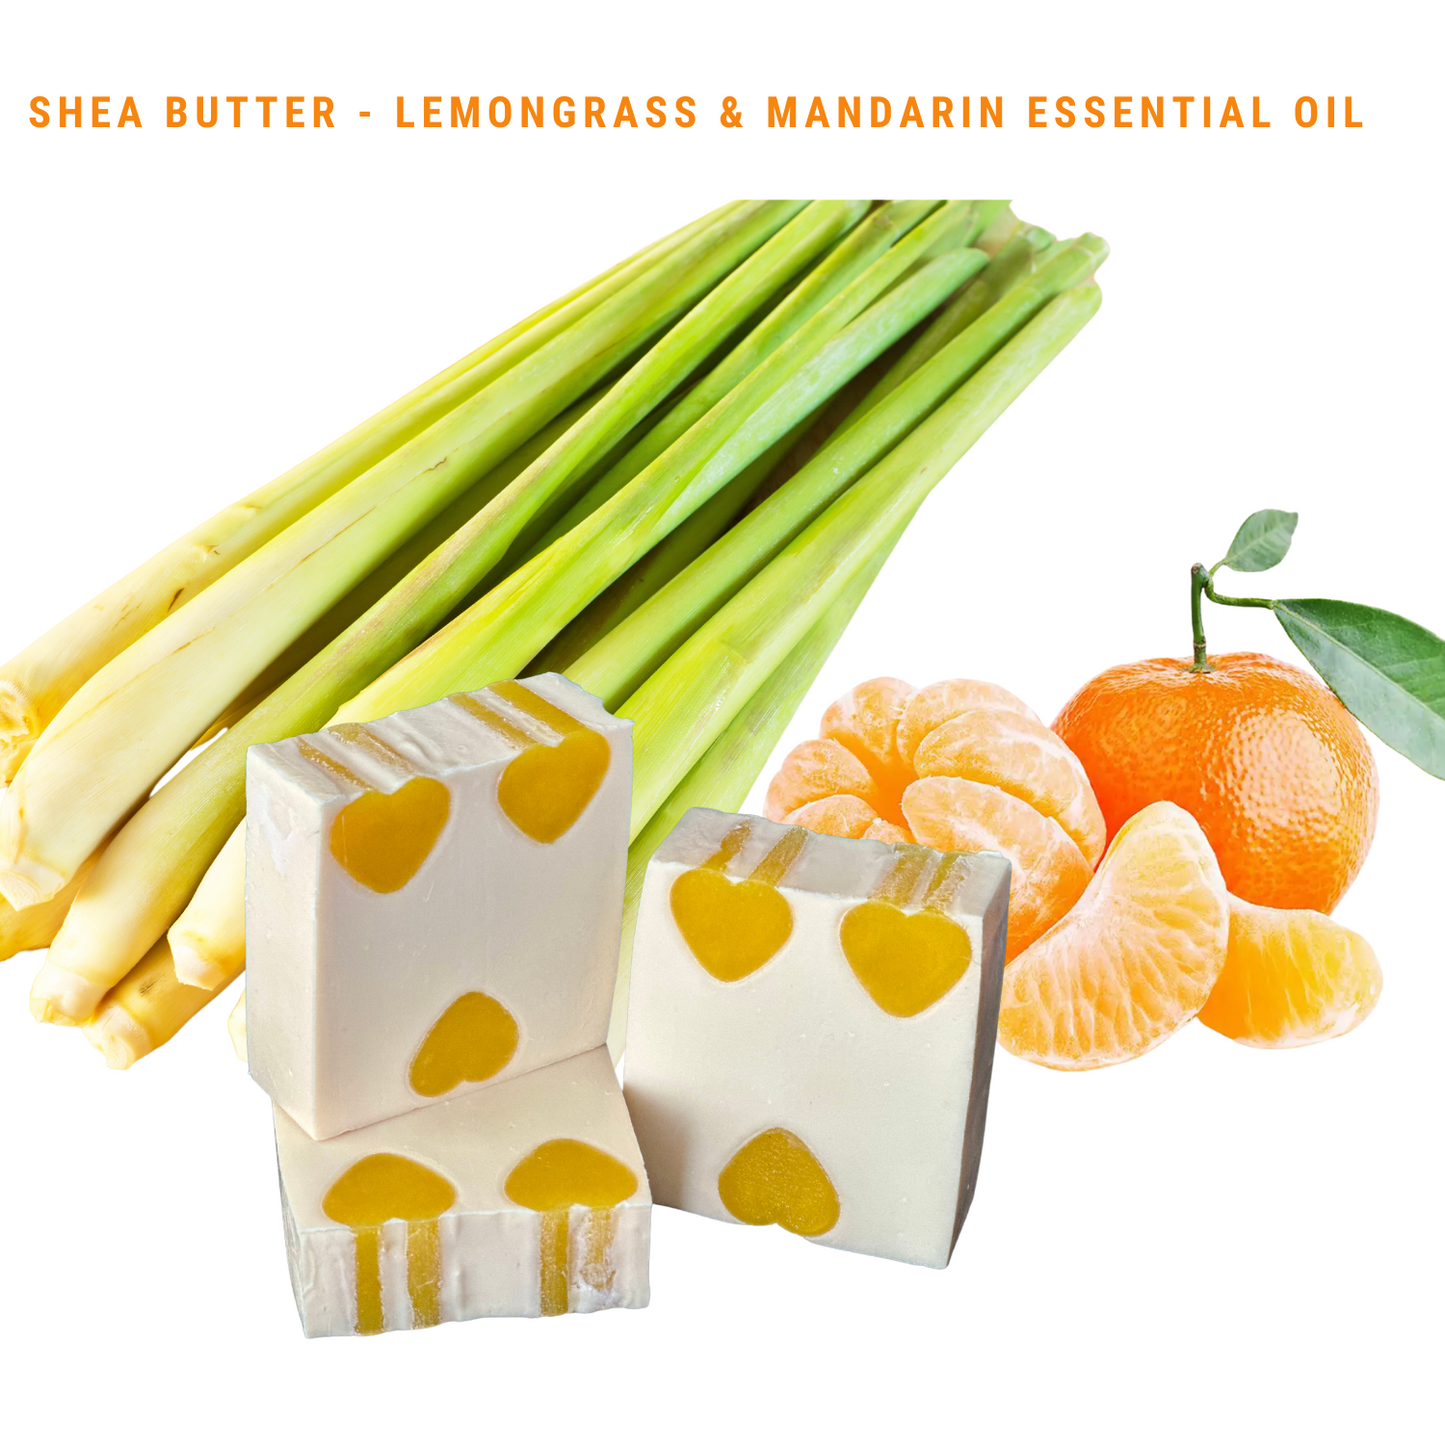 Lemongrass & Mandarin Essential Oils - Shea Butter